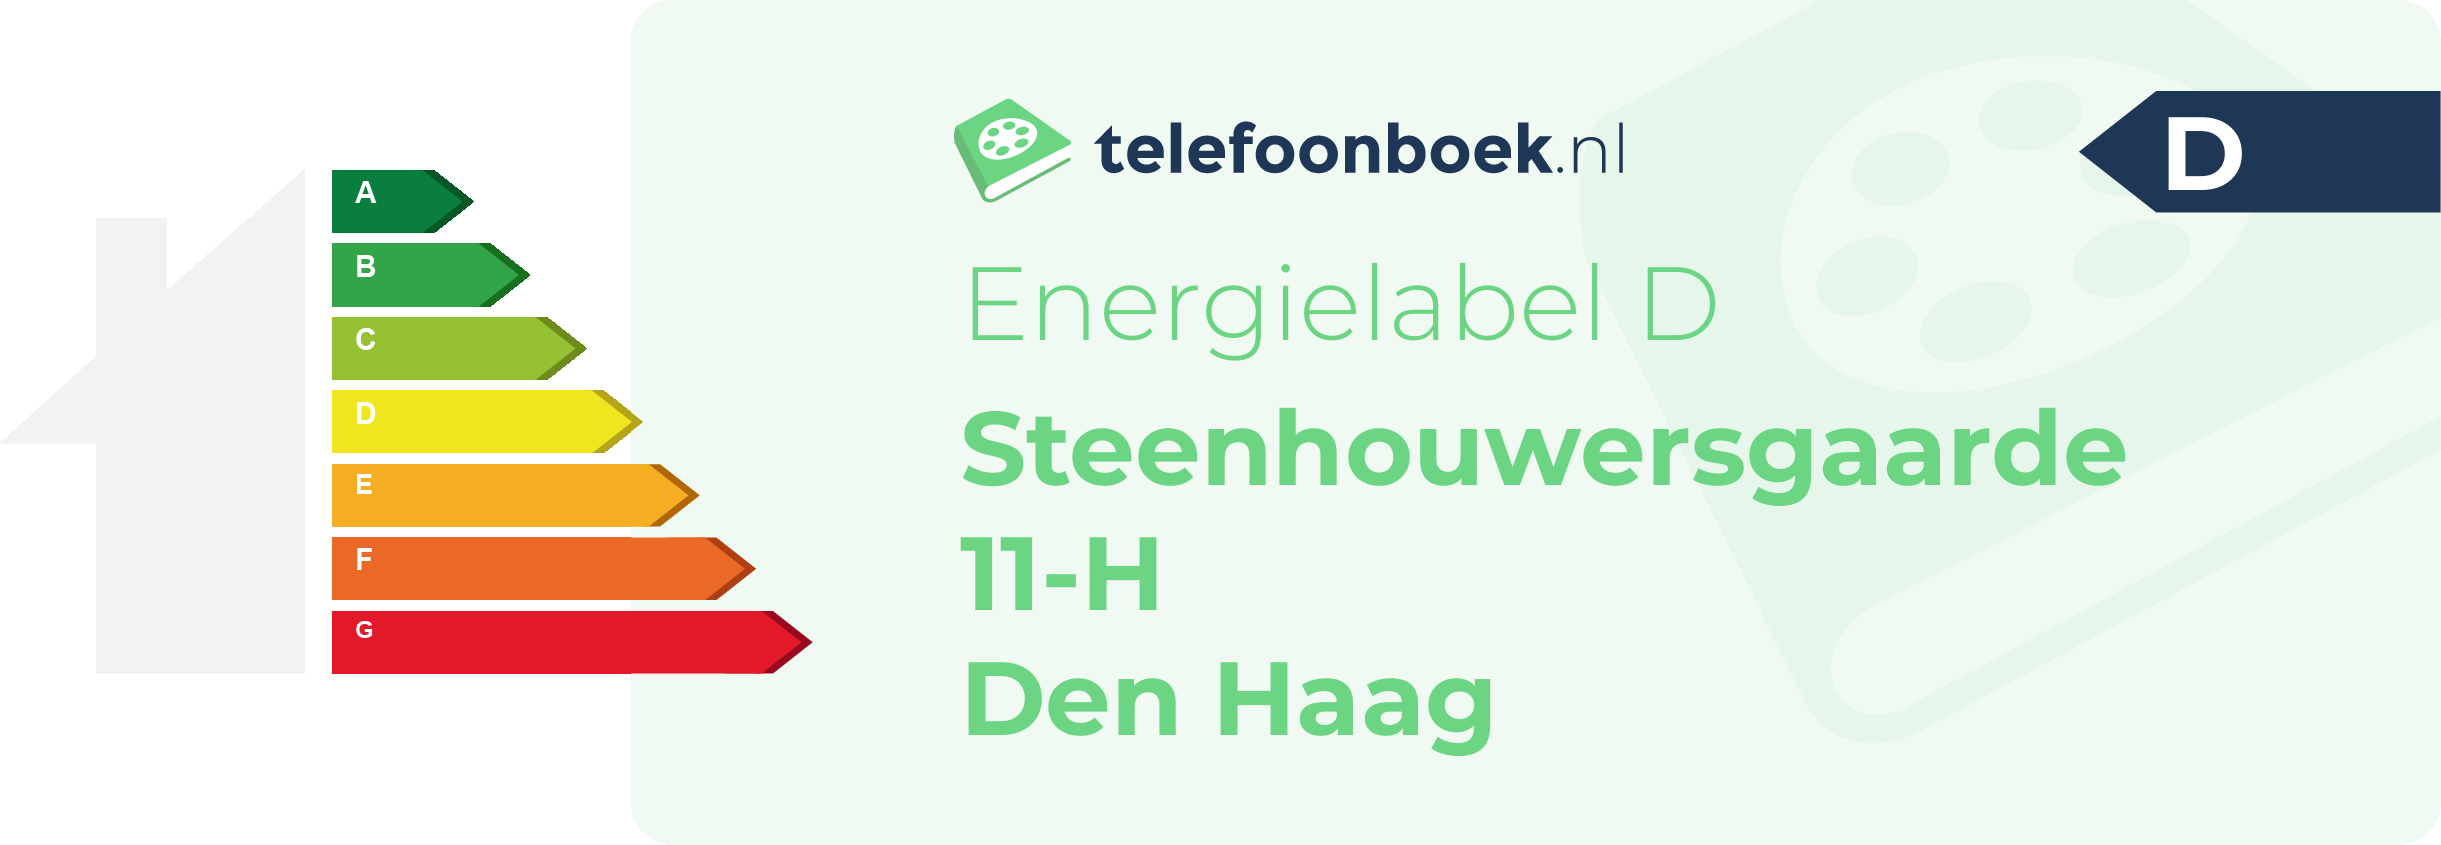 Energielabel Steenhouwersgaarde 11-H Den Haag